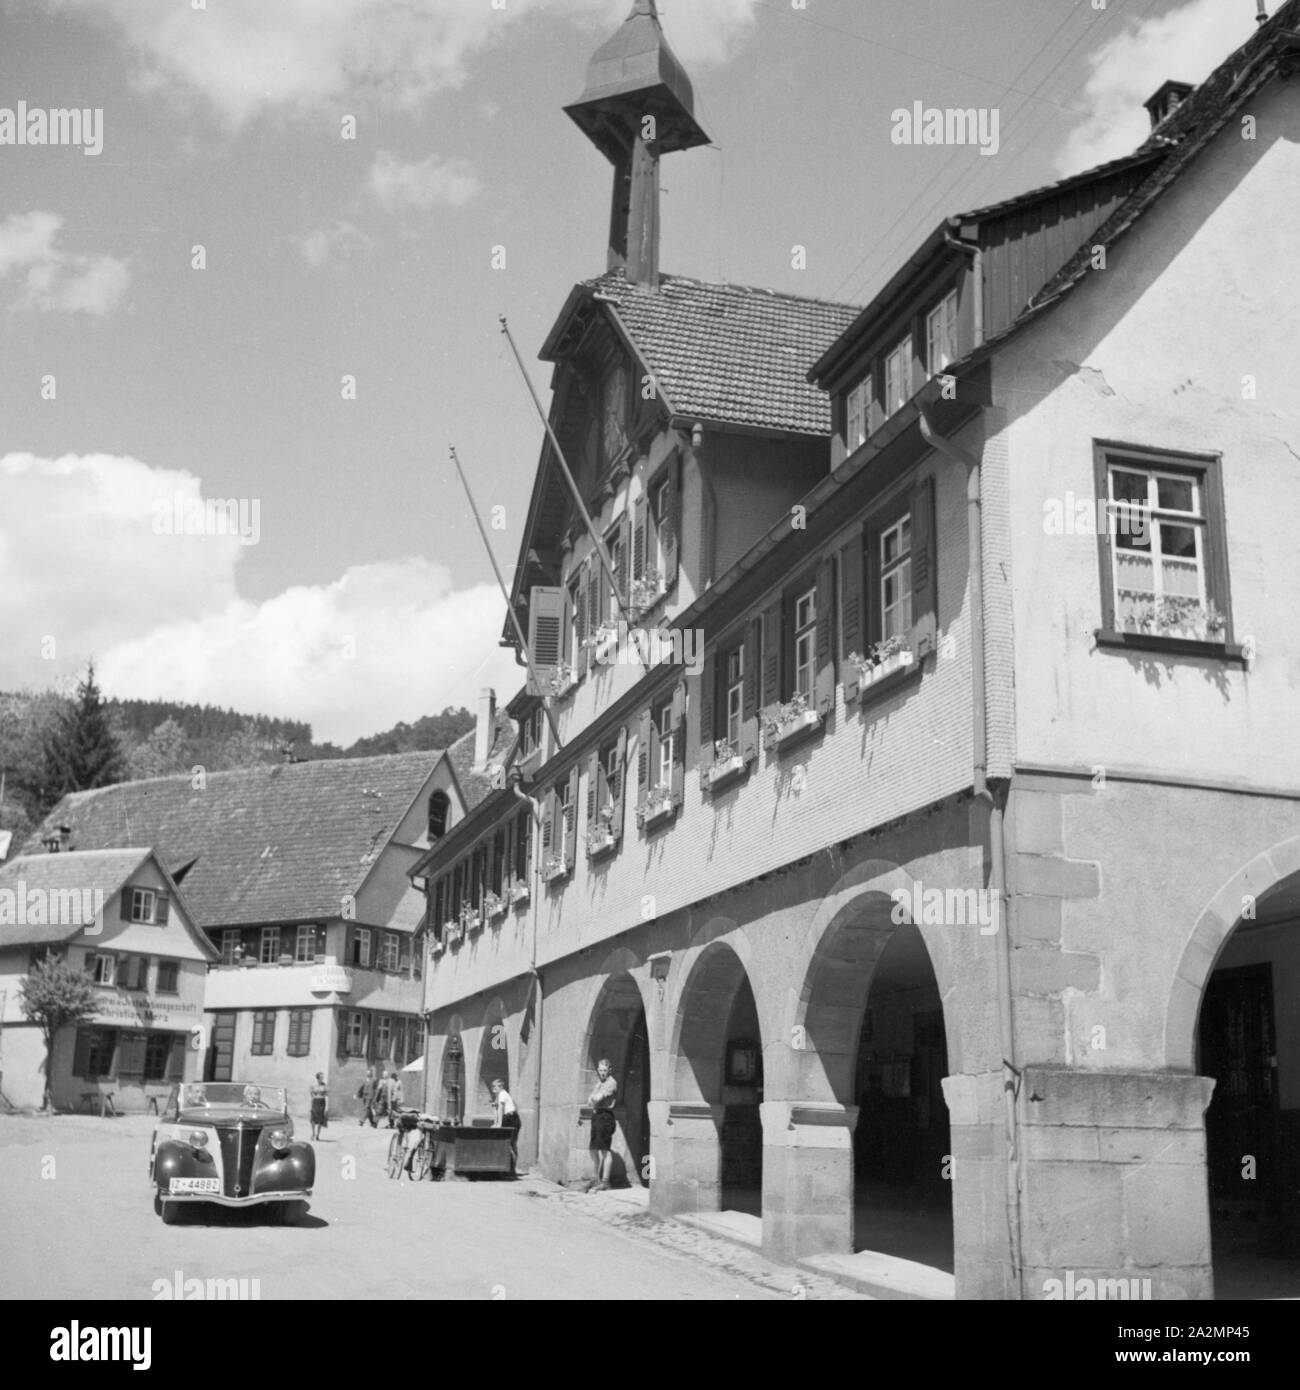 Rathaus in Alpirsbach im Schwarzwald, Deutschland 1930er Jahre. Alpirsbach city hall in the Black Forest region, Germany 1930s. Stock Photo